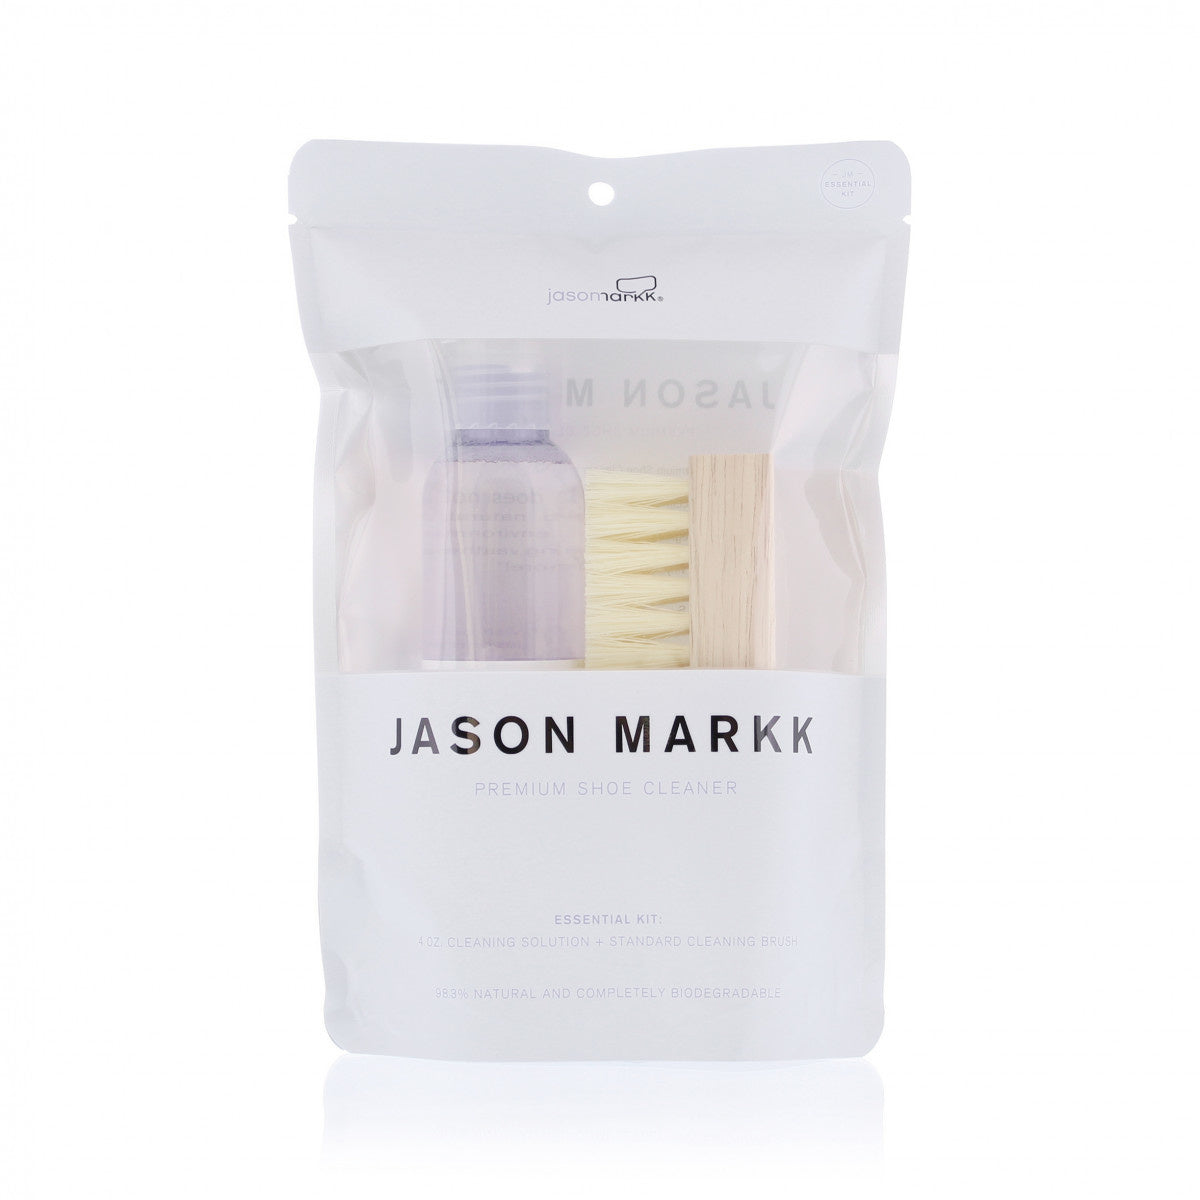 Jason Markk Premium Sneaker Solution Kit